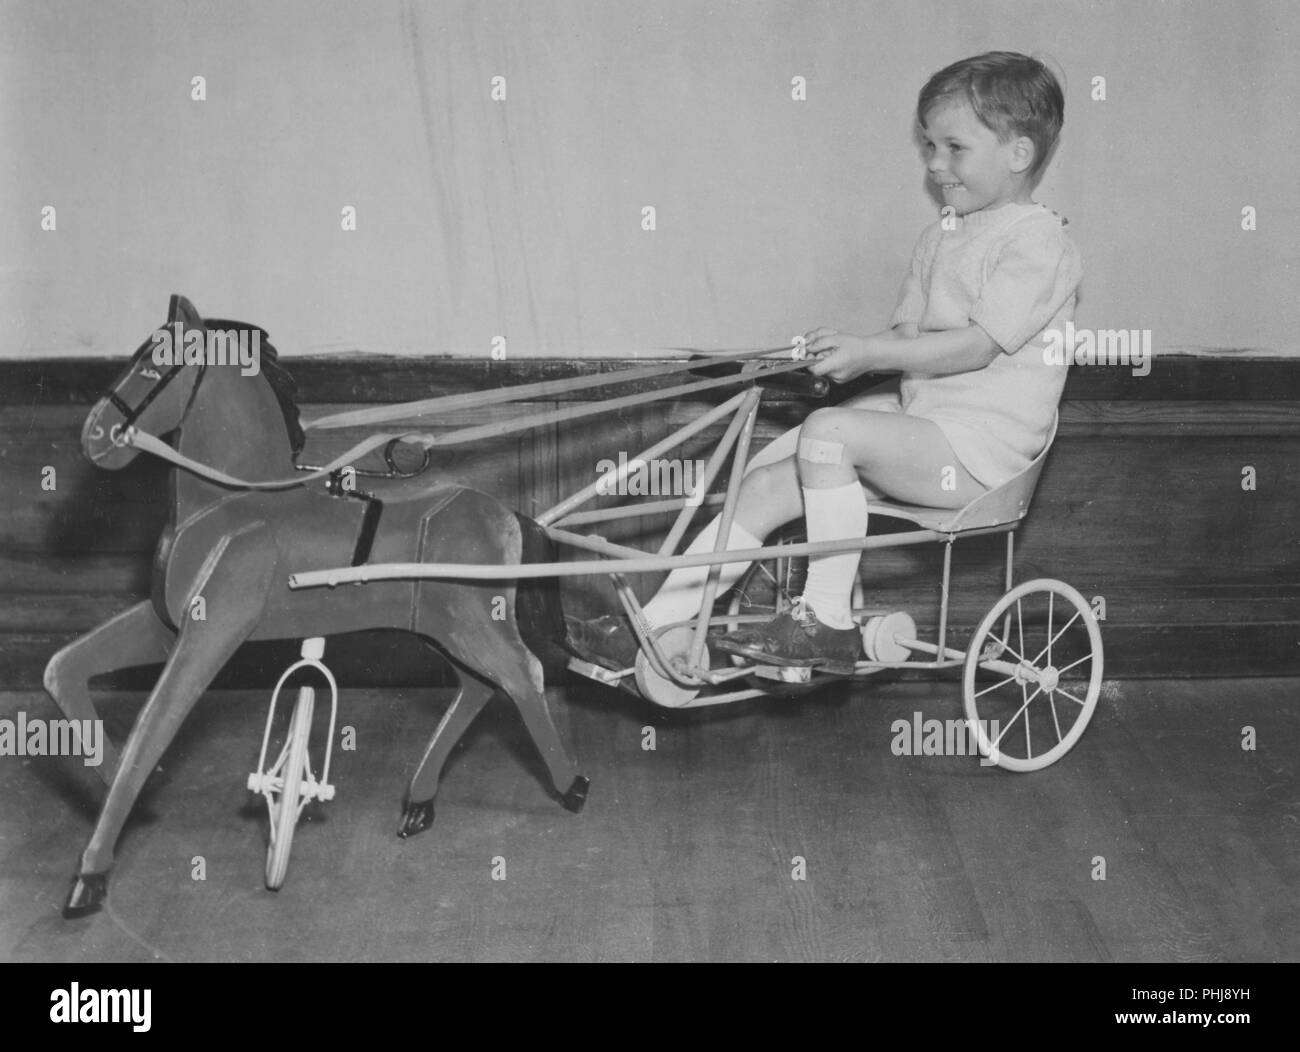 19s0s bicicletta giocattolo. Un ragazzo sta cercando questo anni preferiti giocattolo per bambini, un pedale auto come un cavallo e carrriage. La Svezia 1944 Foto Stock